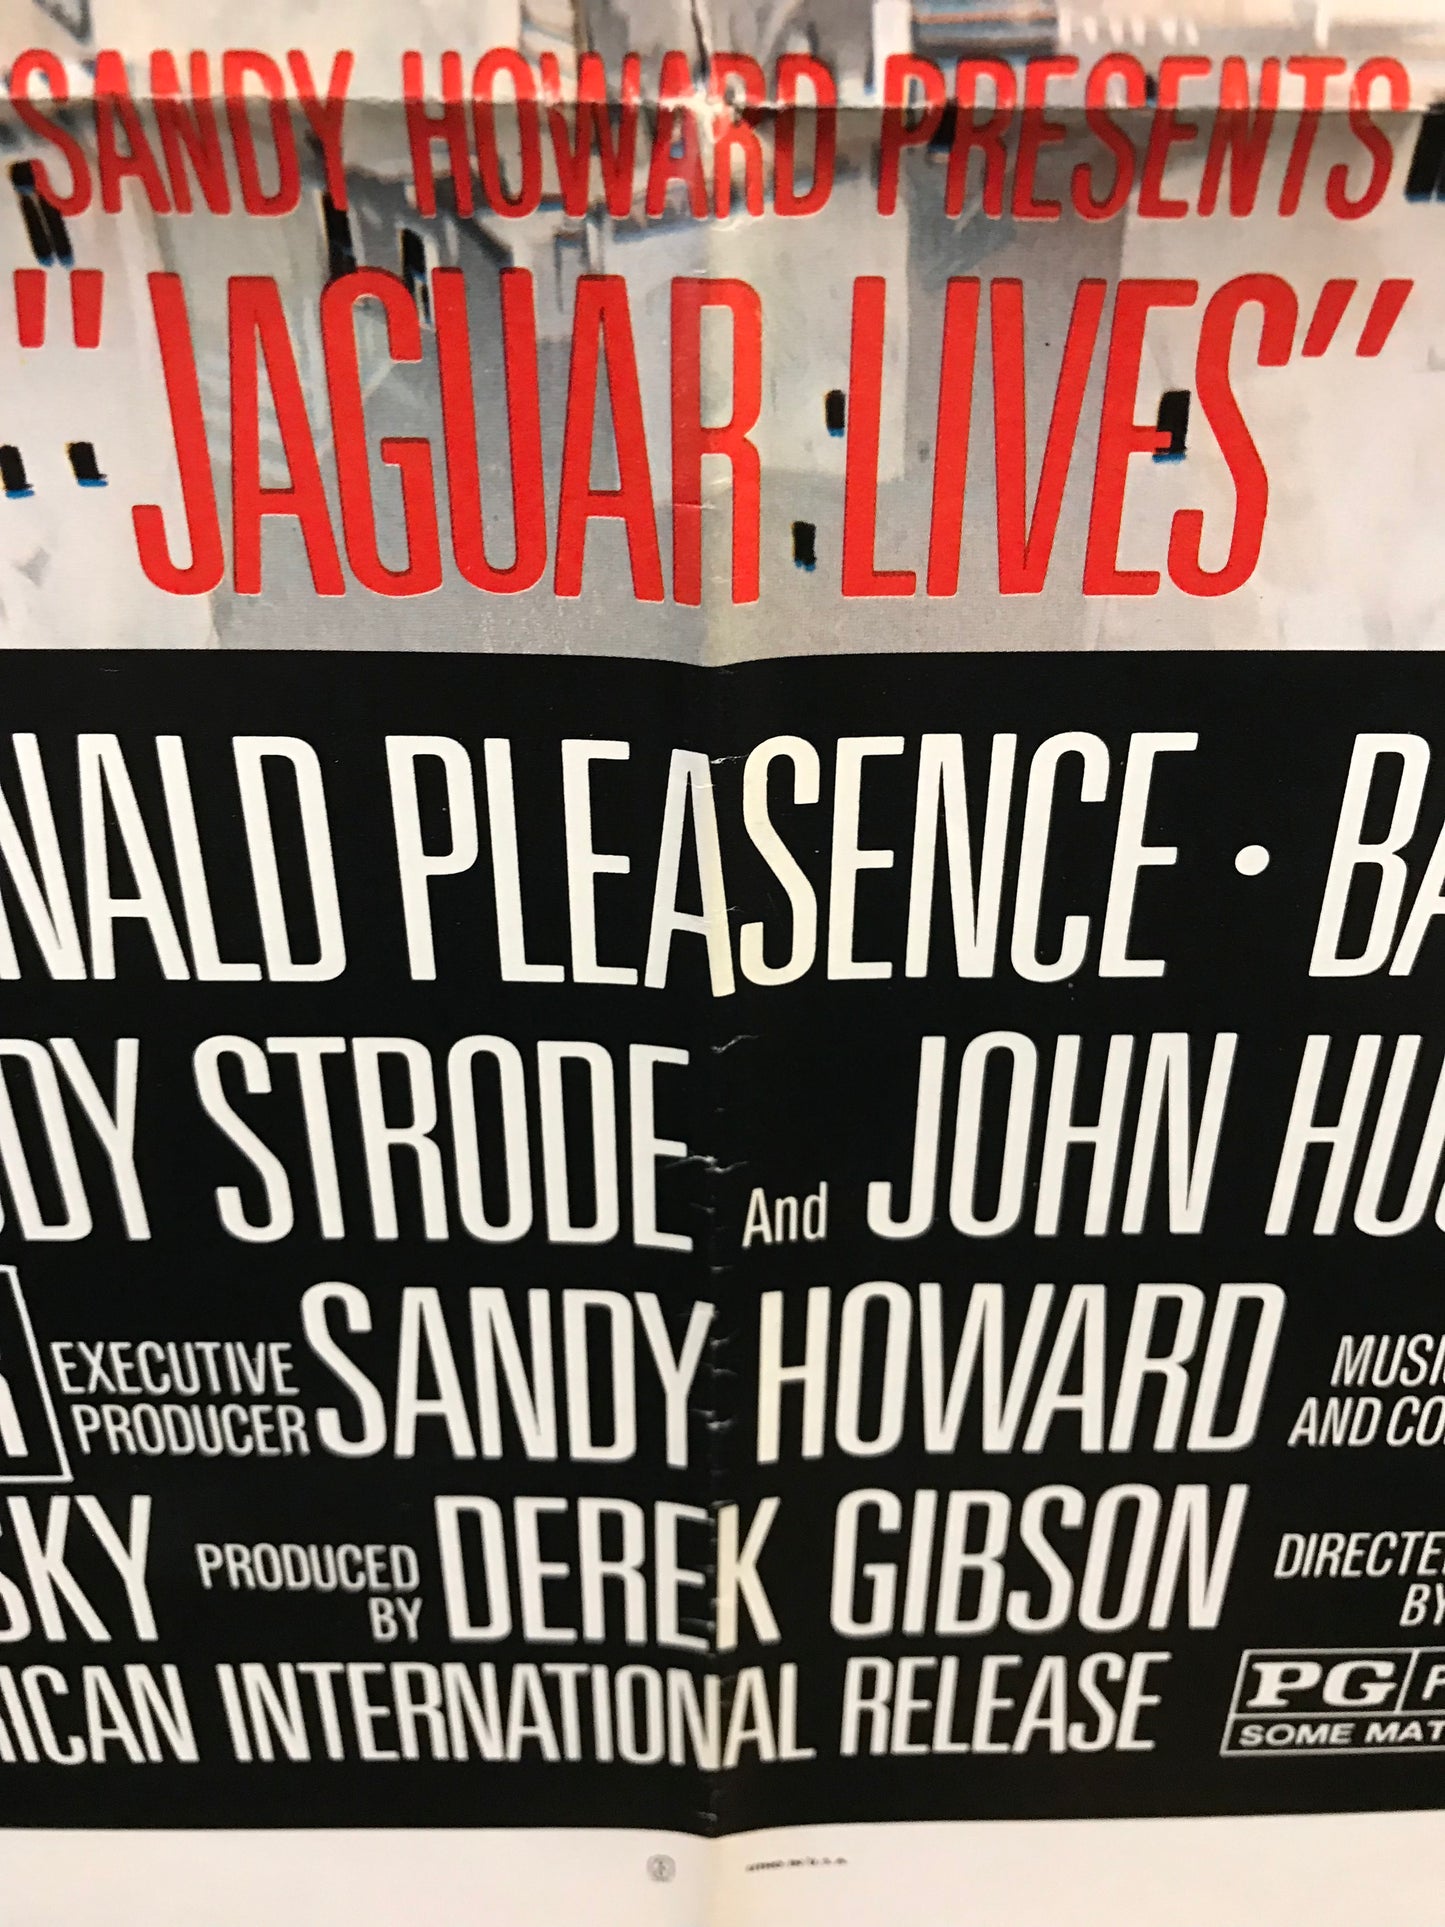 Jaguar Lives Original One Sheet Poster 1979